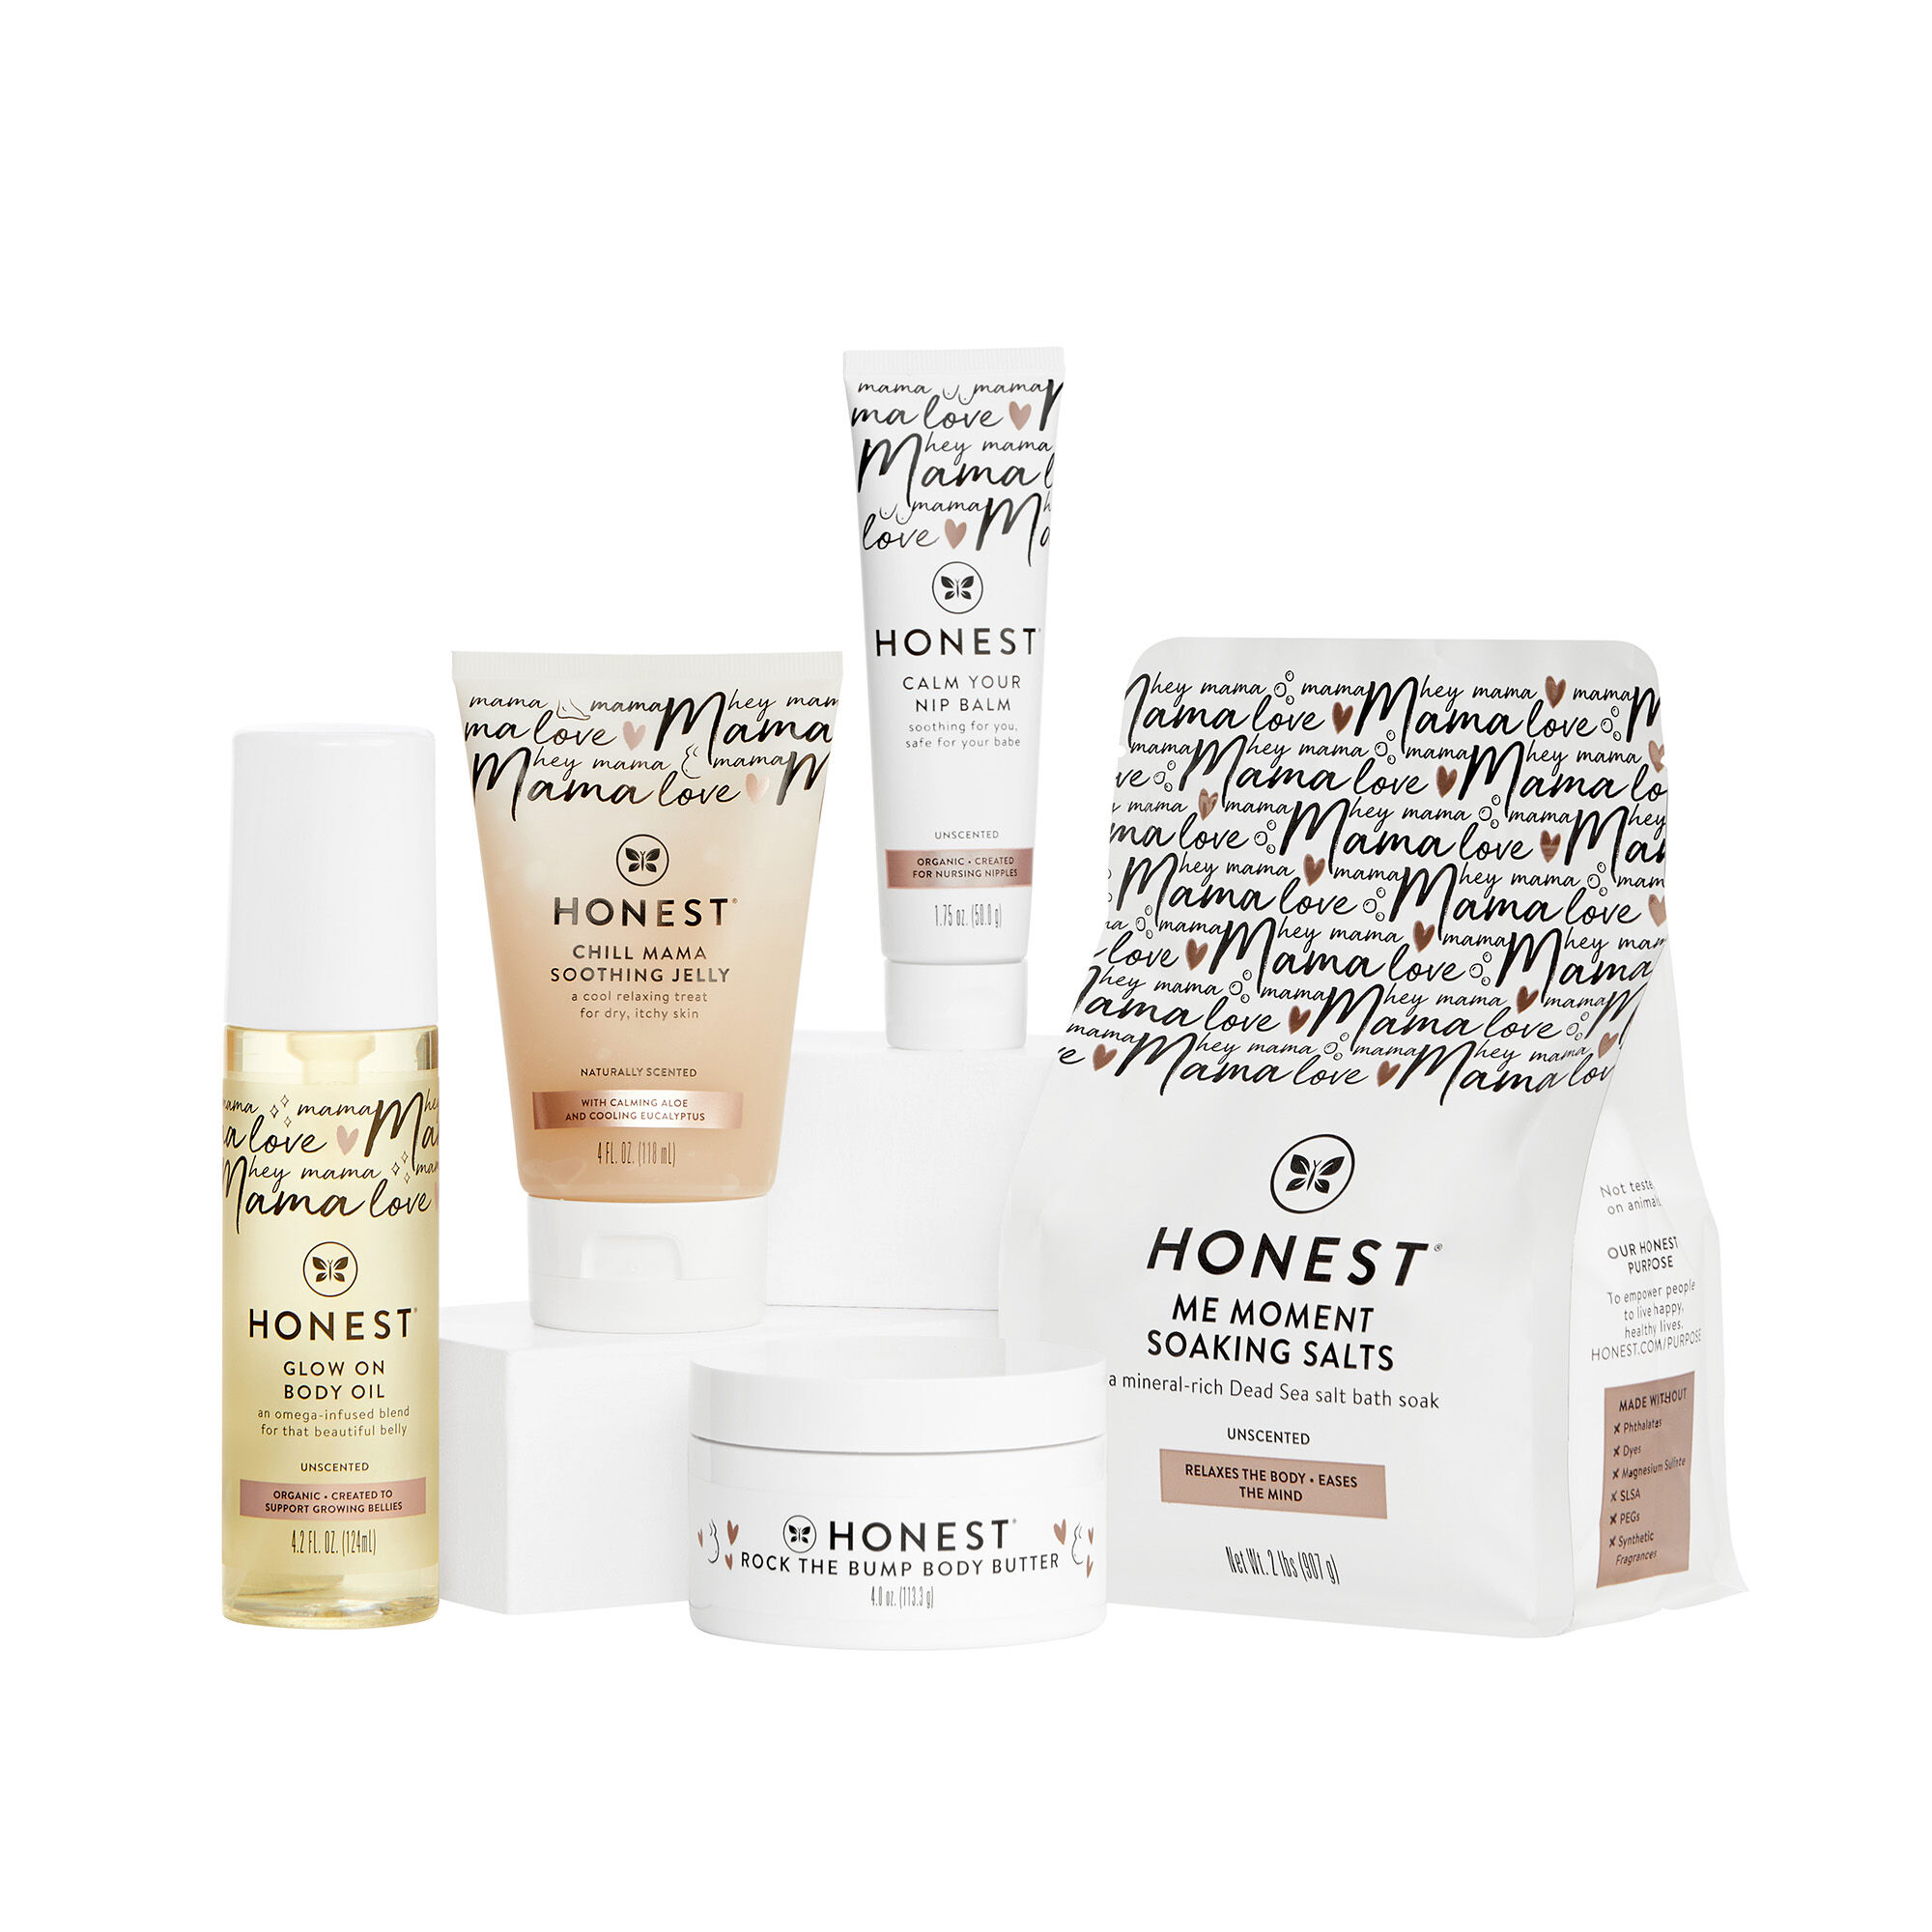 Honest Kits | The Honest Company